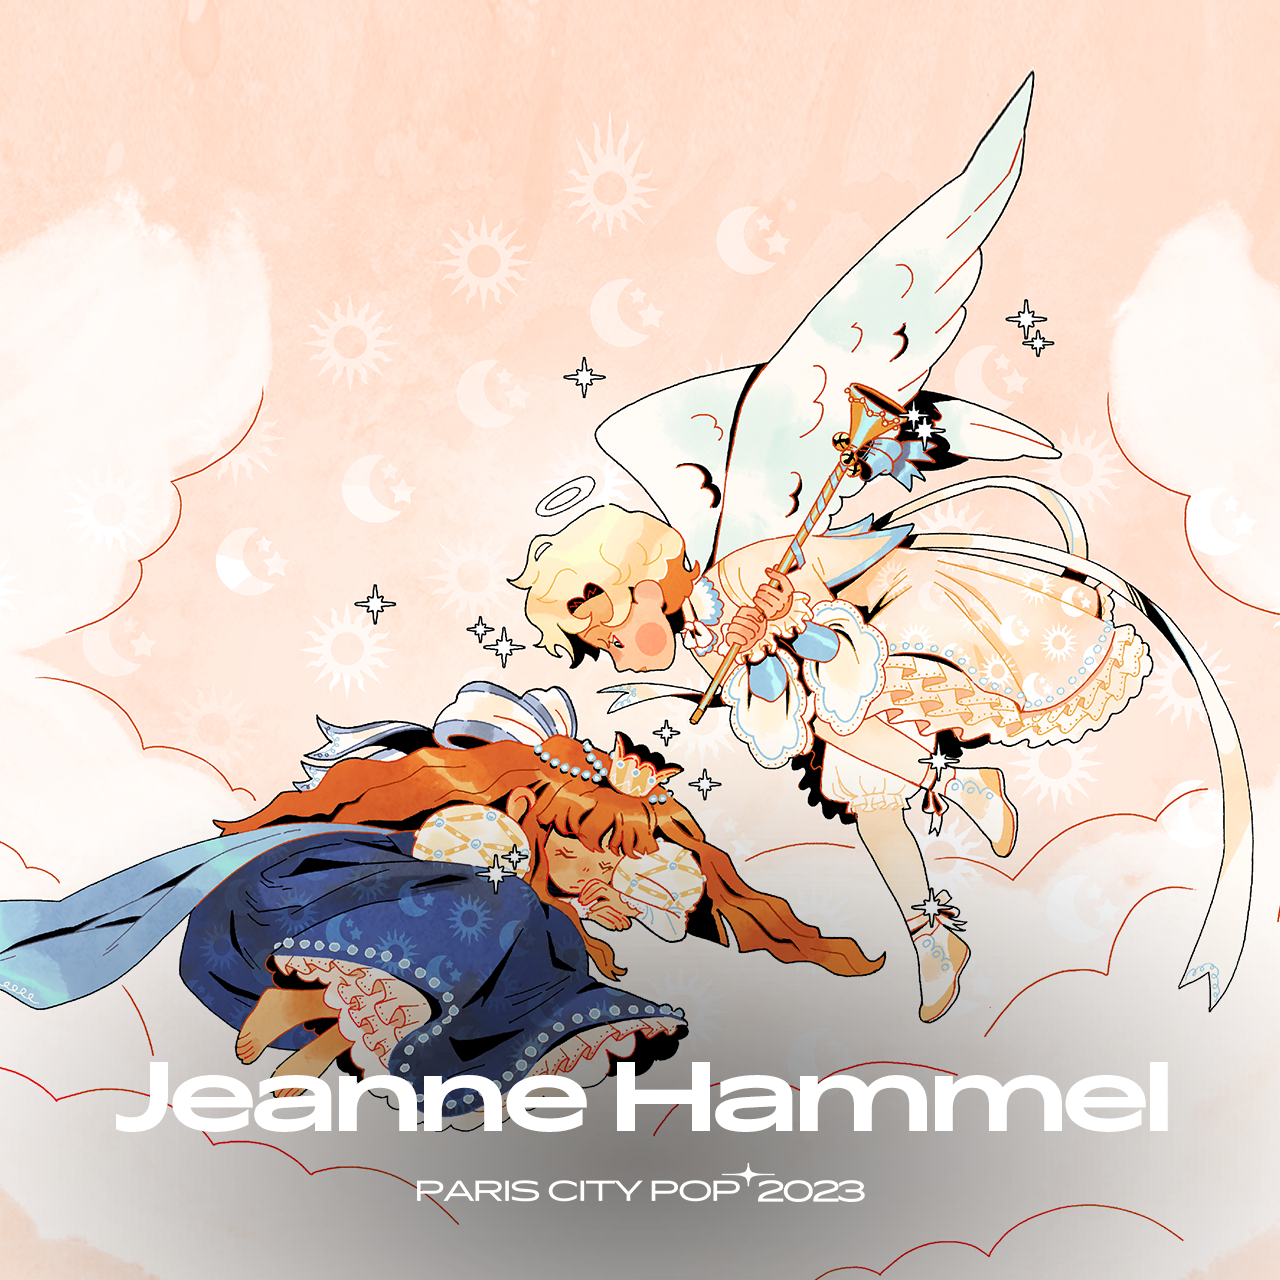 19_Jeanne_hammel-copie